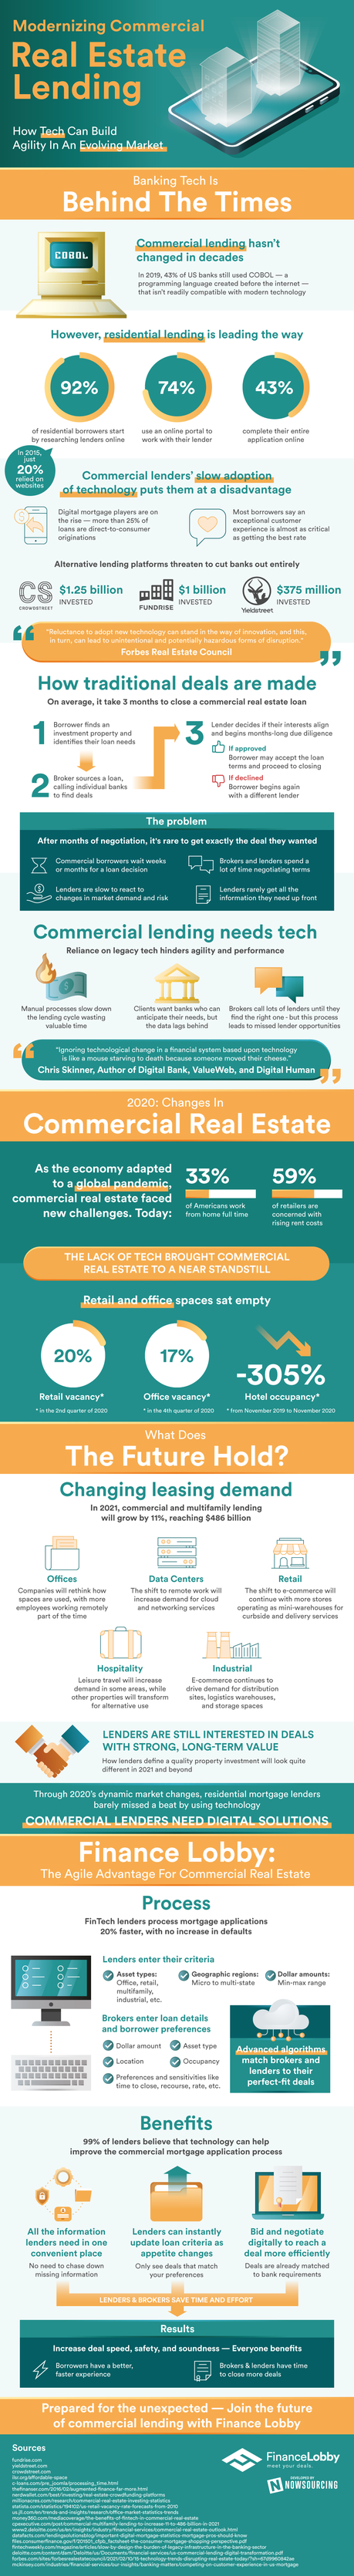 modernizing commercial real estate lending